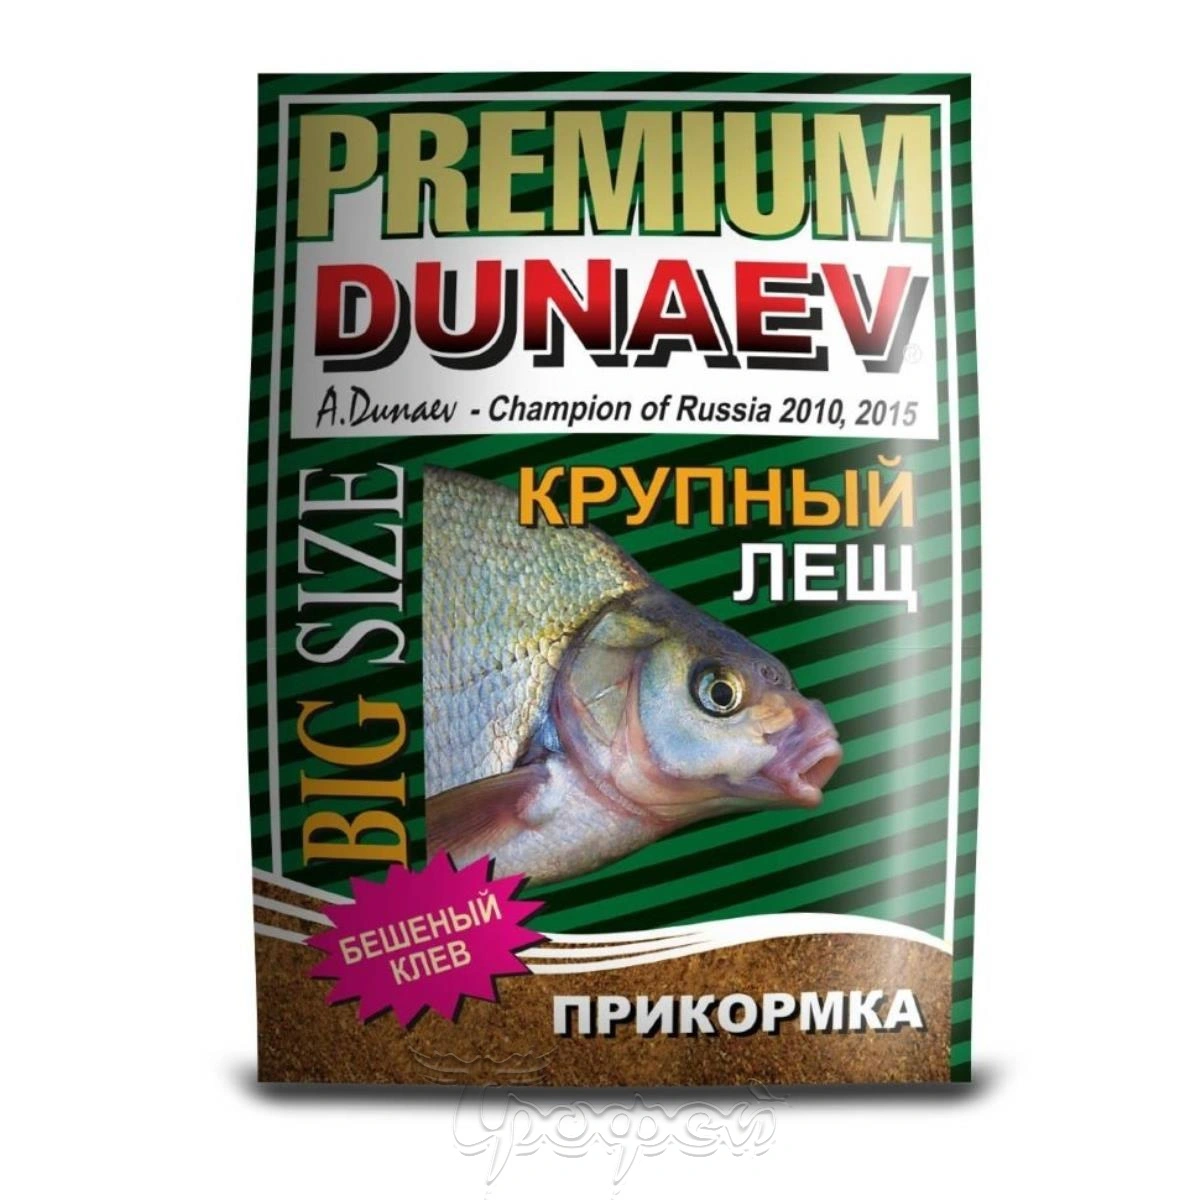 Дунаев мир купить. Прикормка "Dunaev-Premium" 1кг лещ крупная фракция. Прикормка "Dunaev-Premium" крупная фракция, 1 кг. Прикормка Дунаев крупный лещ. Прикормка Dunaev-Premium 1кг.